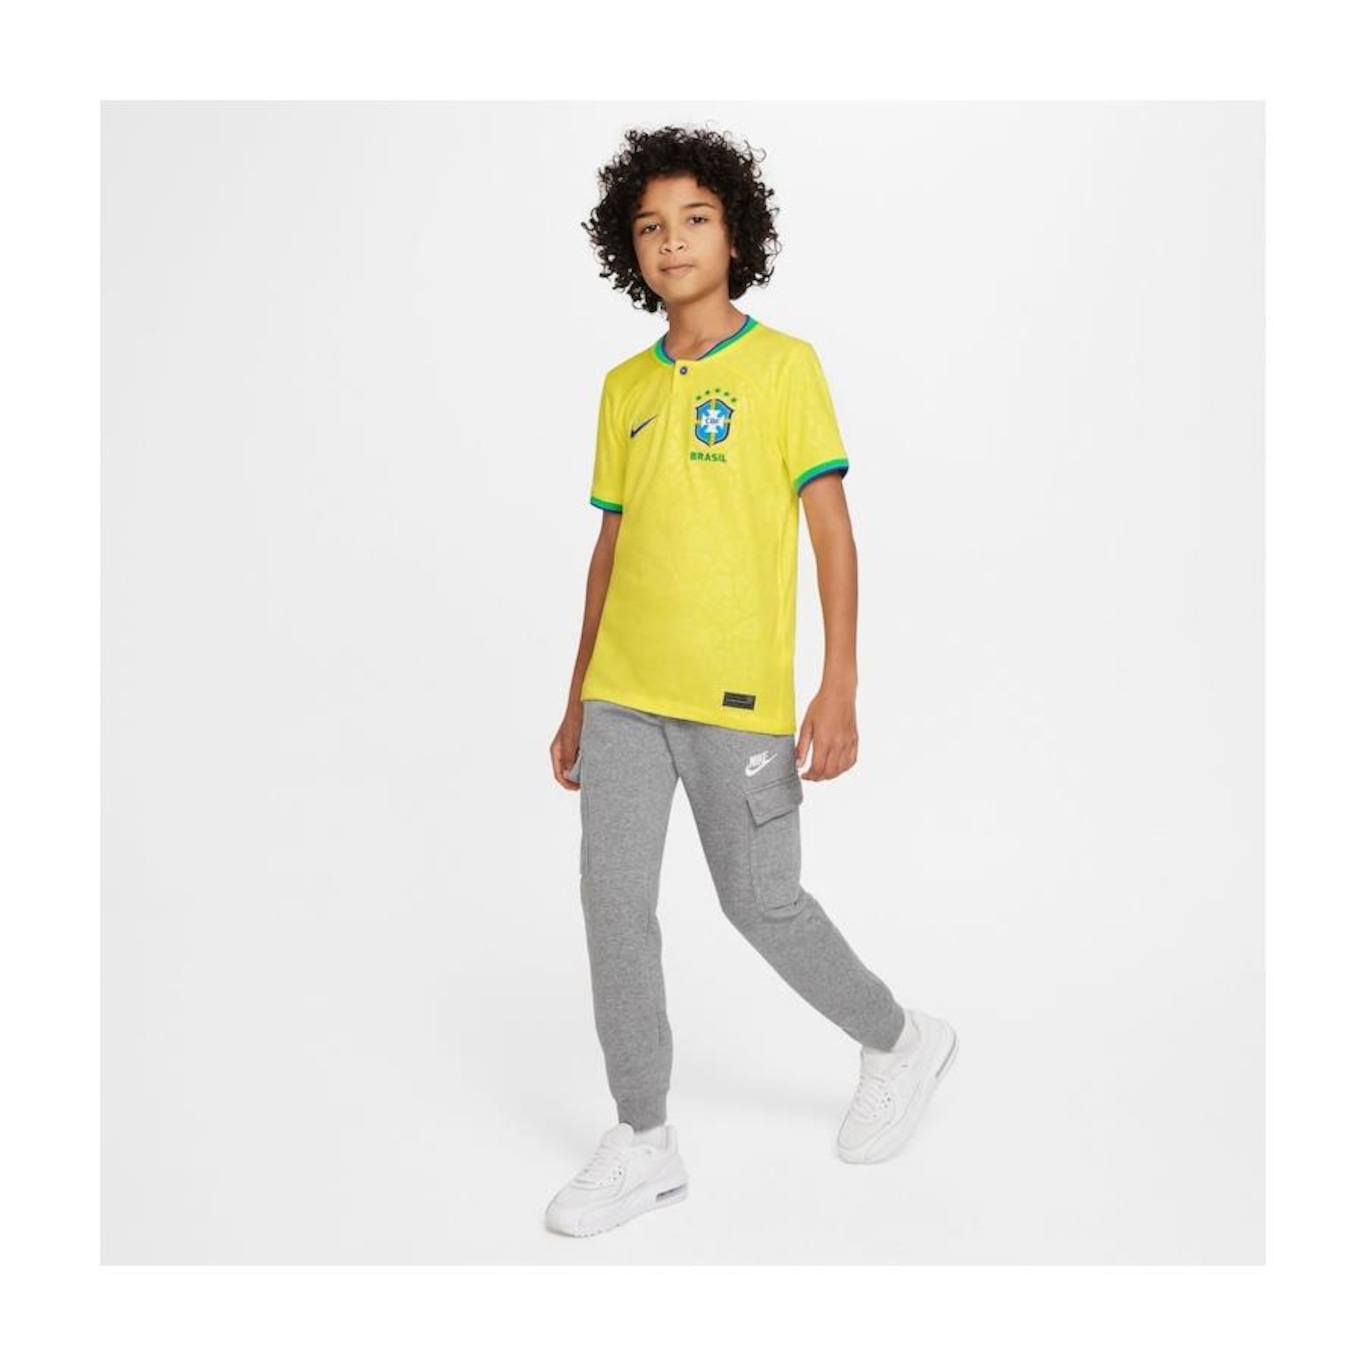 Camisa do Brasil Torcedor Pro I 22/23 Nike - Infantil em Promoção